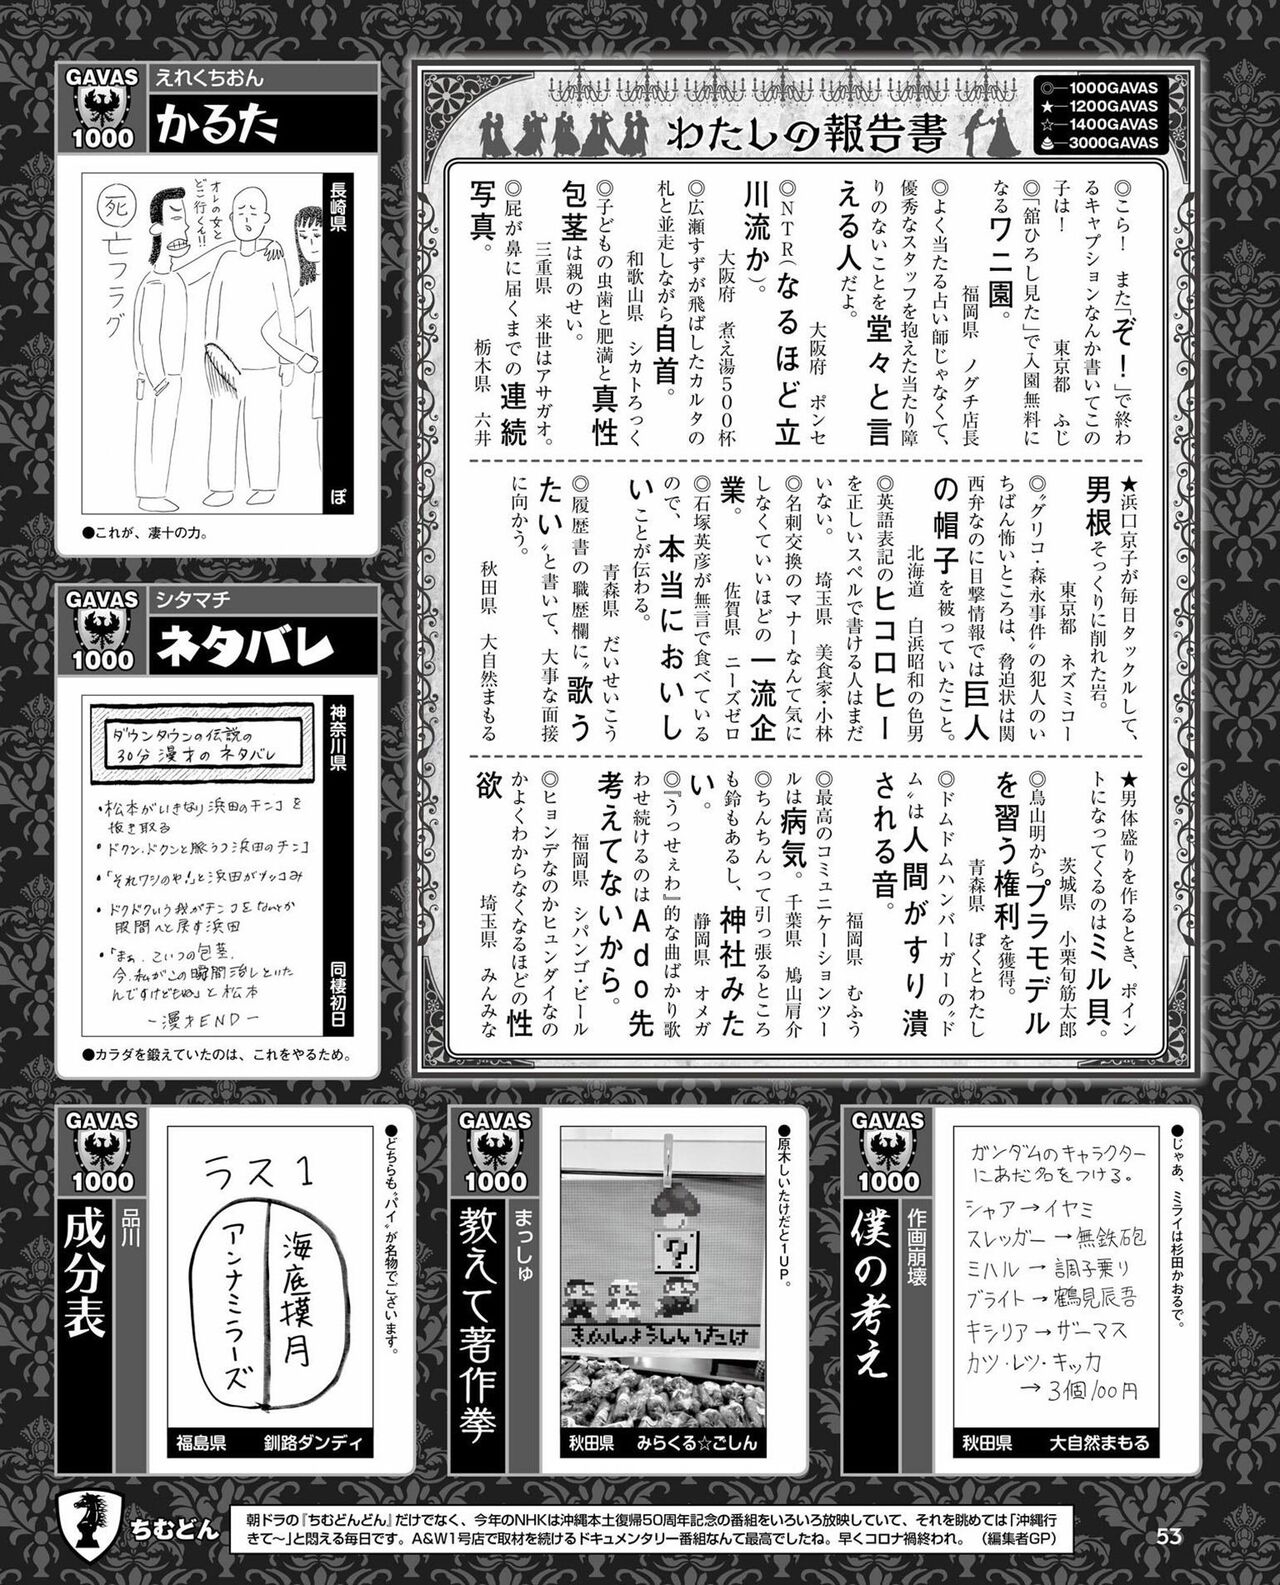 Weekly Famitsu 2022 6 2 52